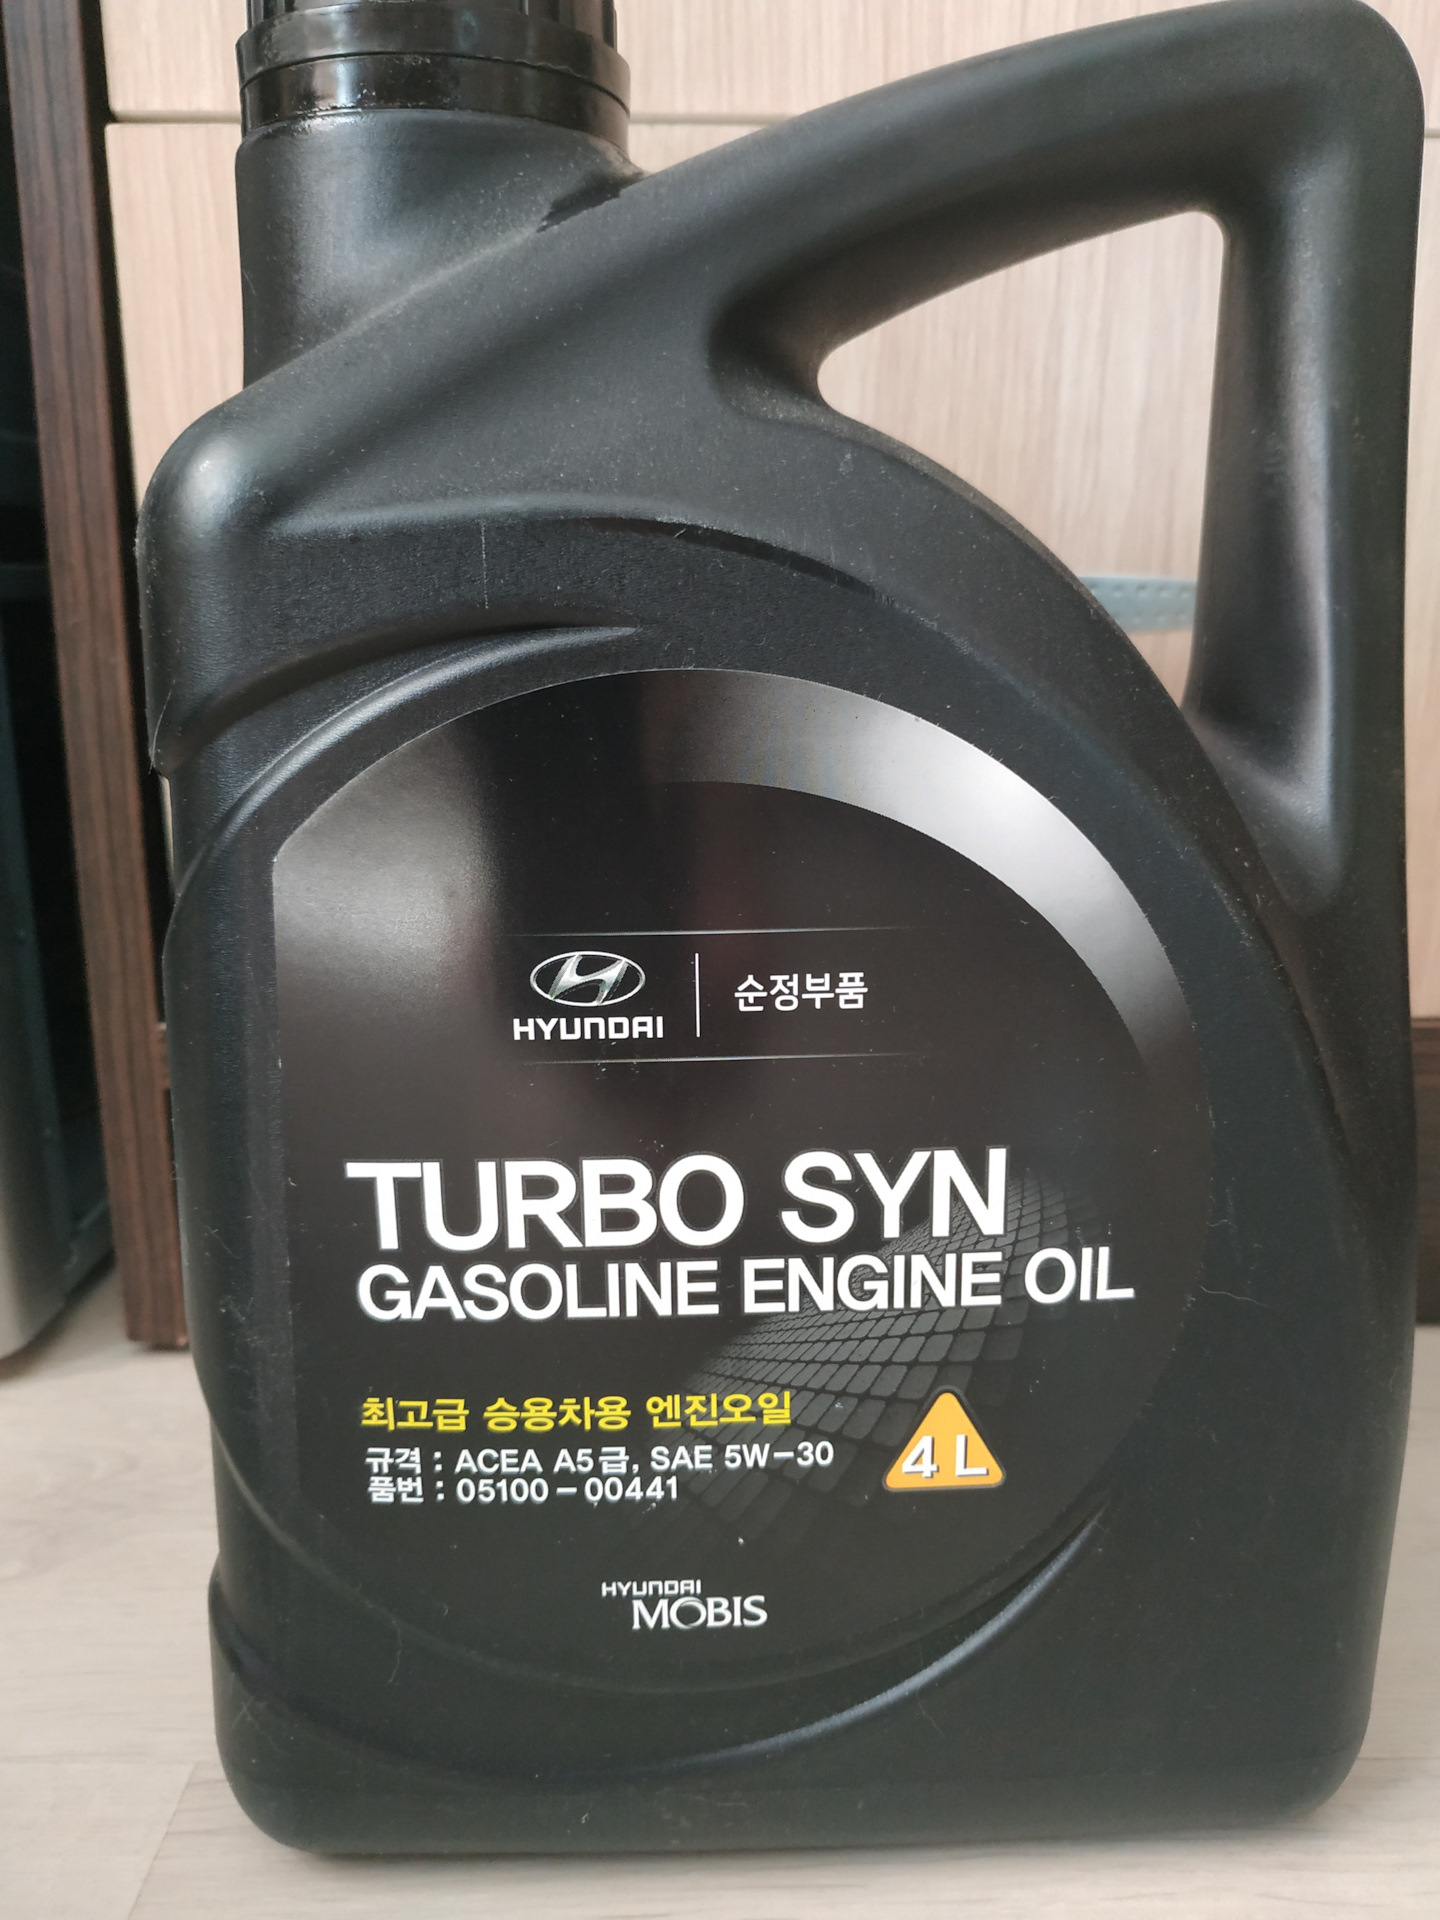 Моторное масло хендай турбо син. Hyundai Turbo syn gasoline 5w-30 4л. Масло Turbo syn 5w30. Масло Turbo syn gasoline 5w-30. Mobis 5w30 Turbo syn.